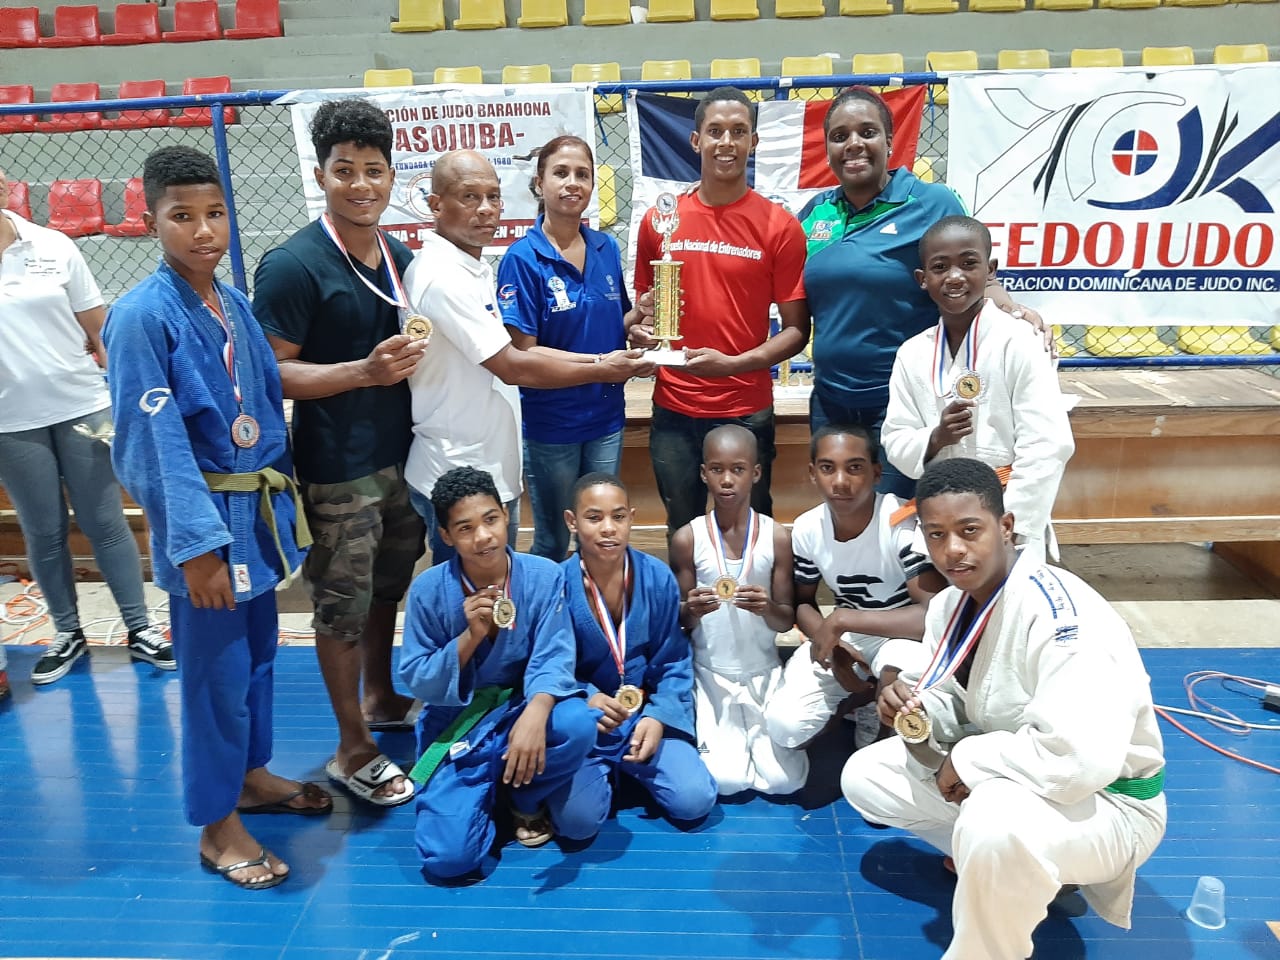 La provincia Independencia recibe el trofeo de segundo lugar del torneo invitacional de judo de Barahona.